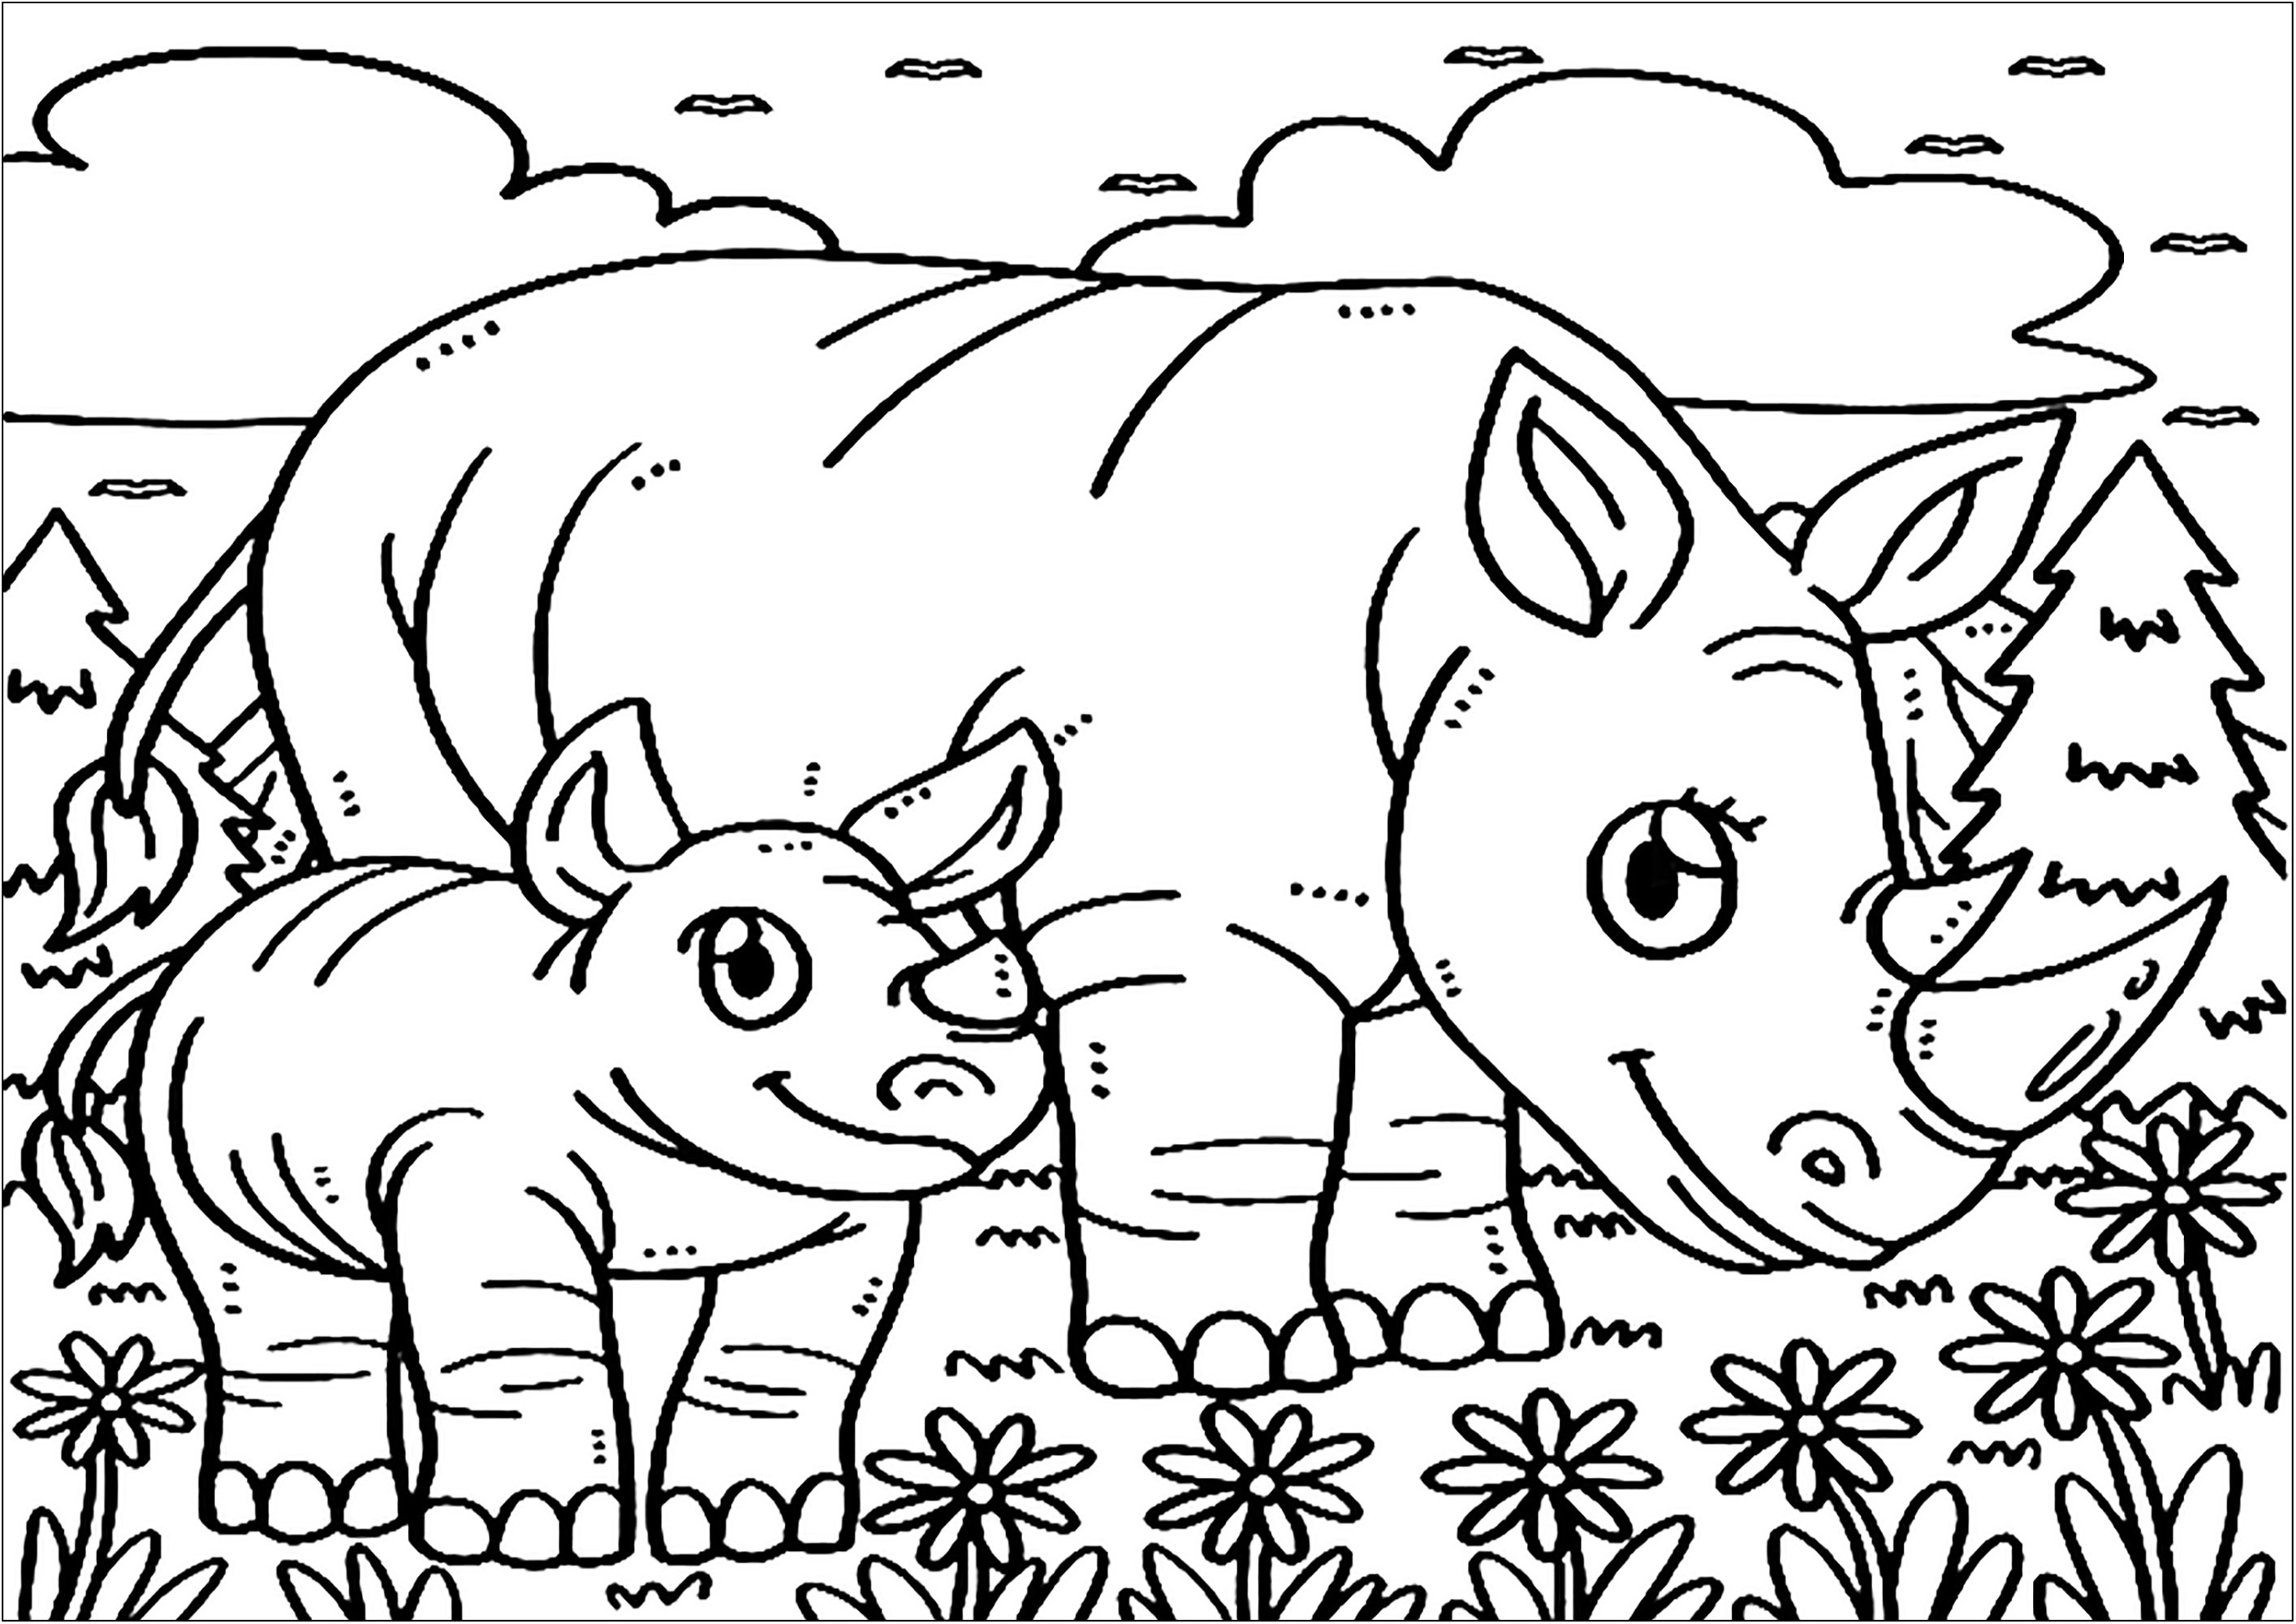 Dois Rinoceronte. Uma bonita página para colorir com muitos pormenores para colorir: paisagem, flores, nuvens...